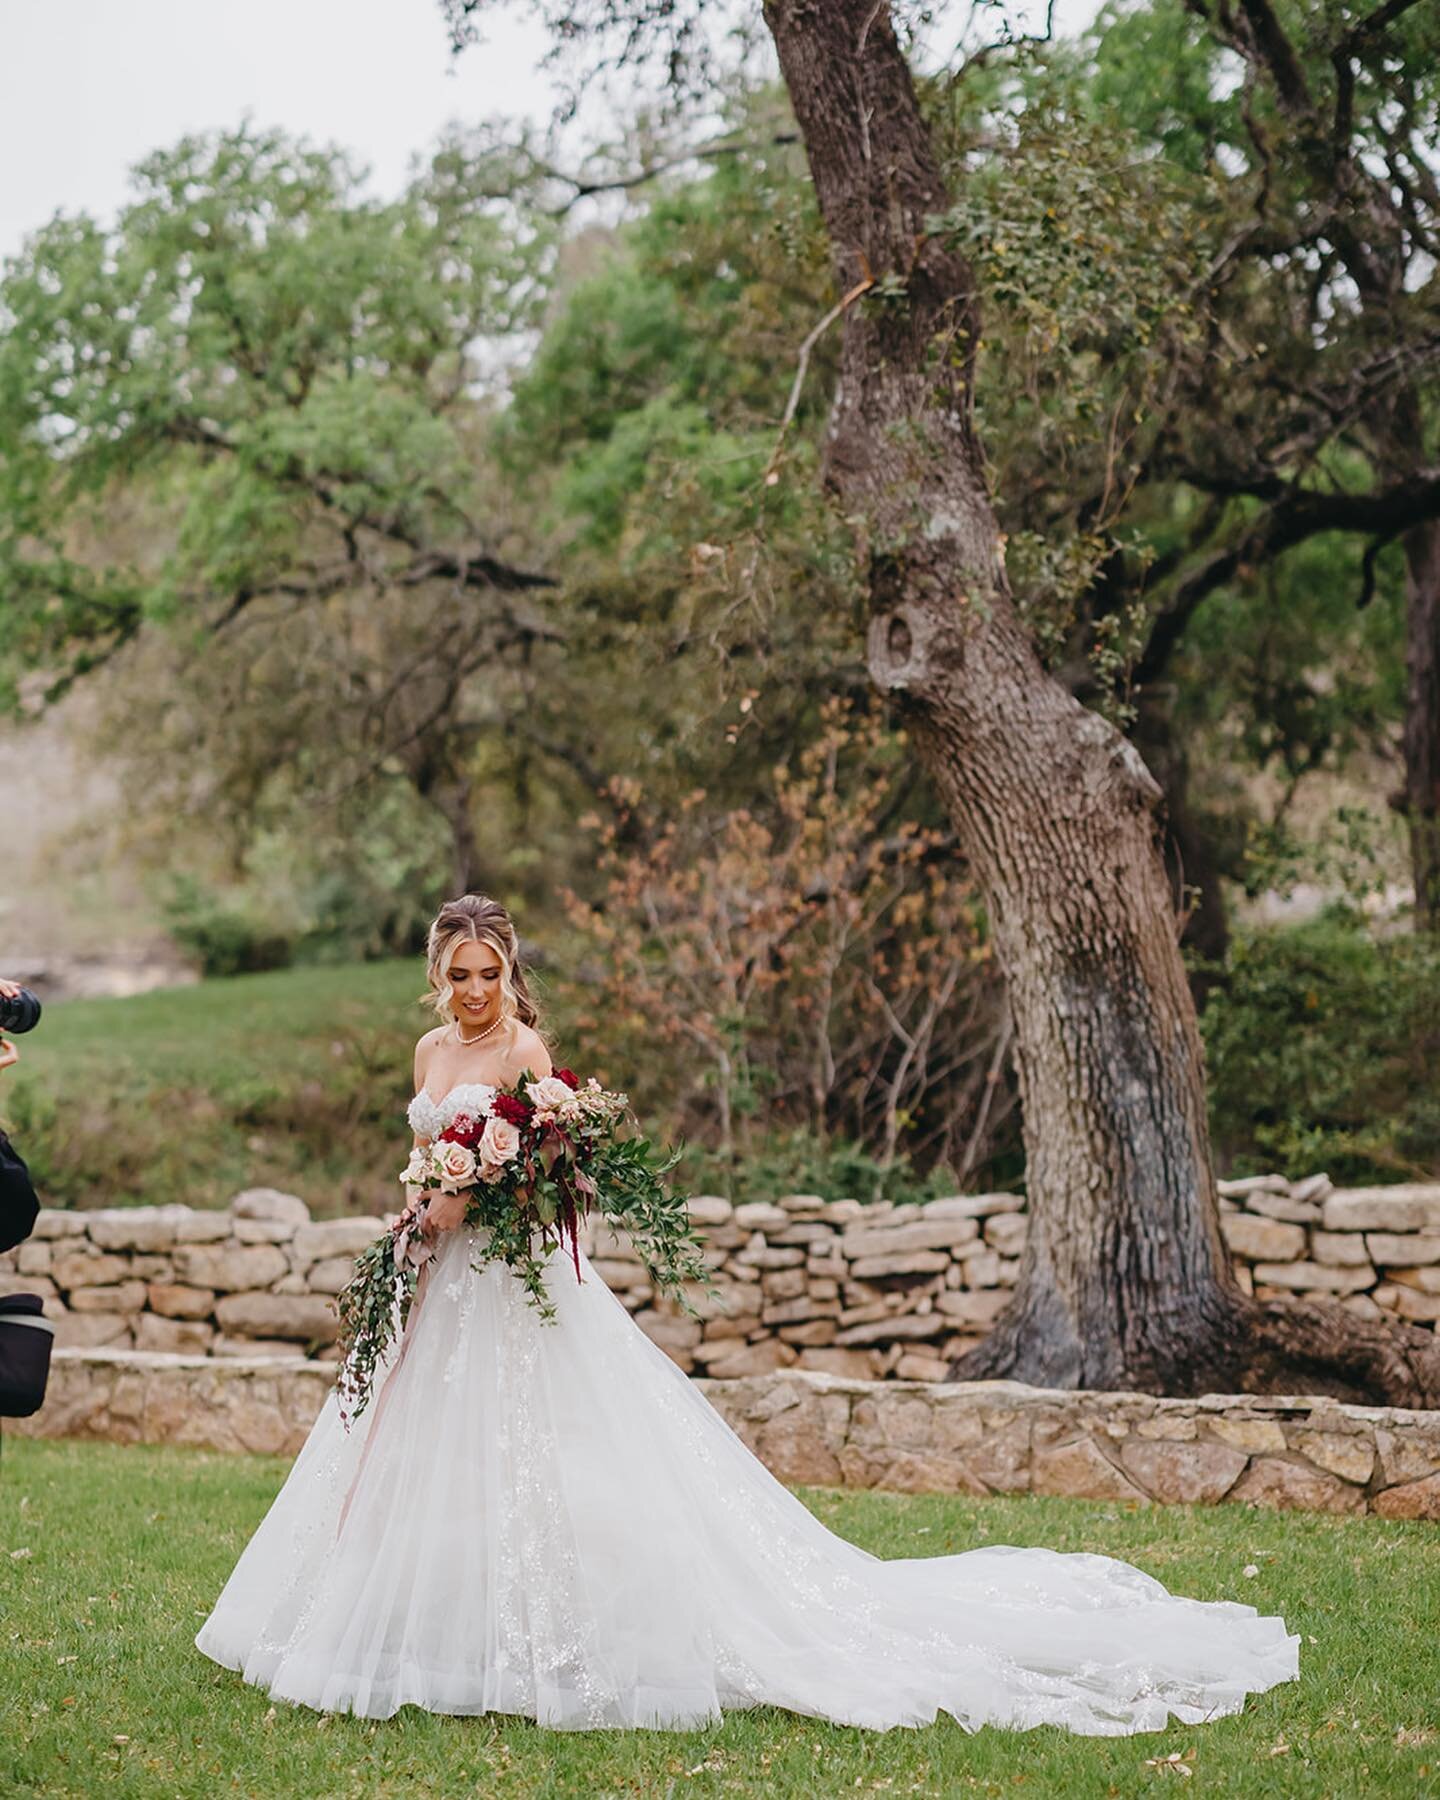 We love a bold, bride that embraces a unique and artistic bouquet.